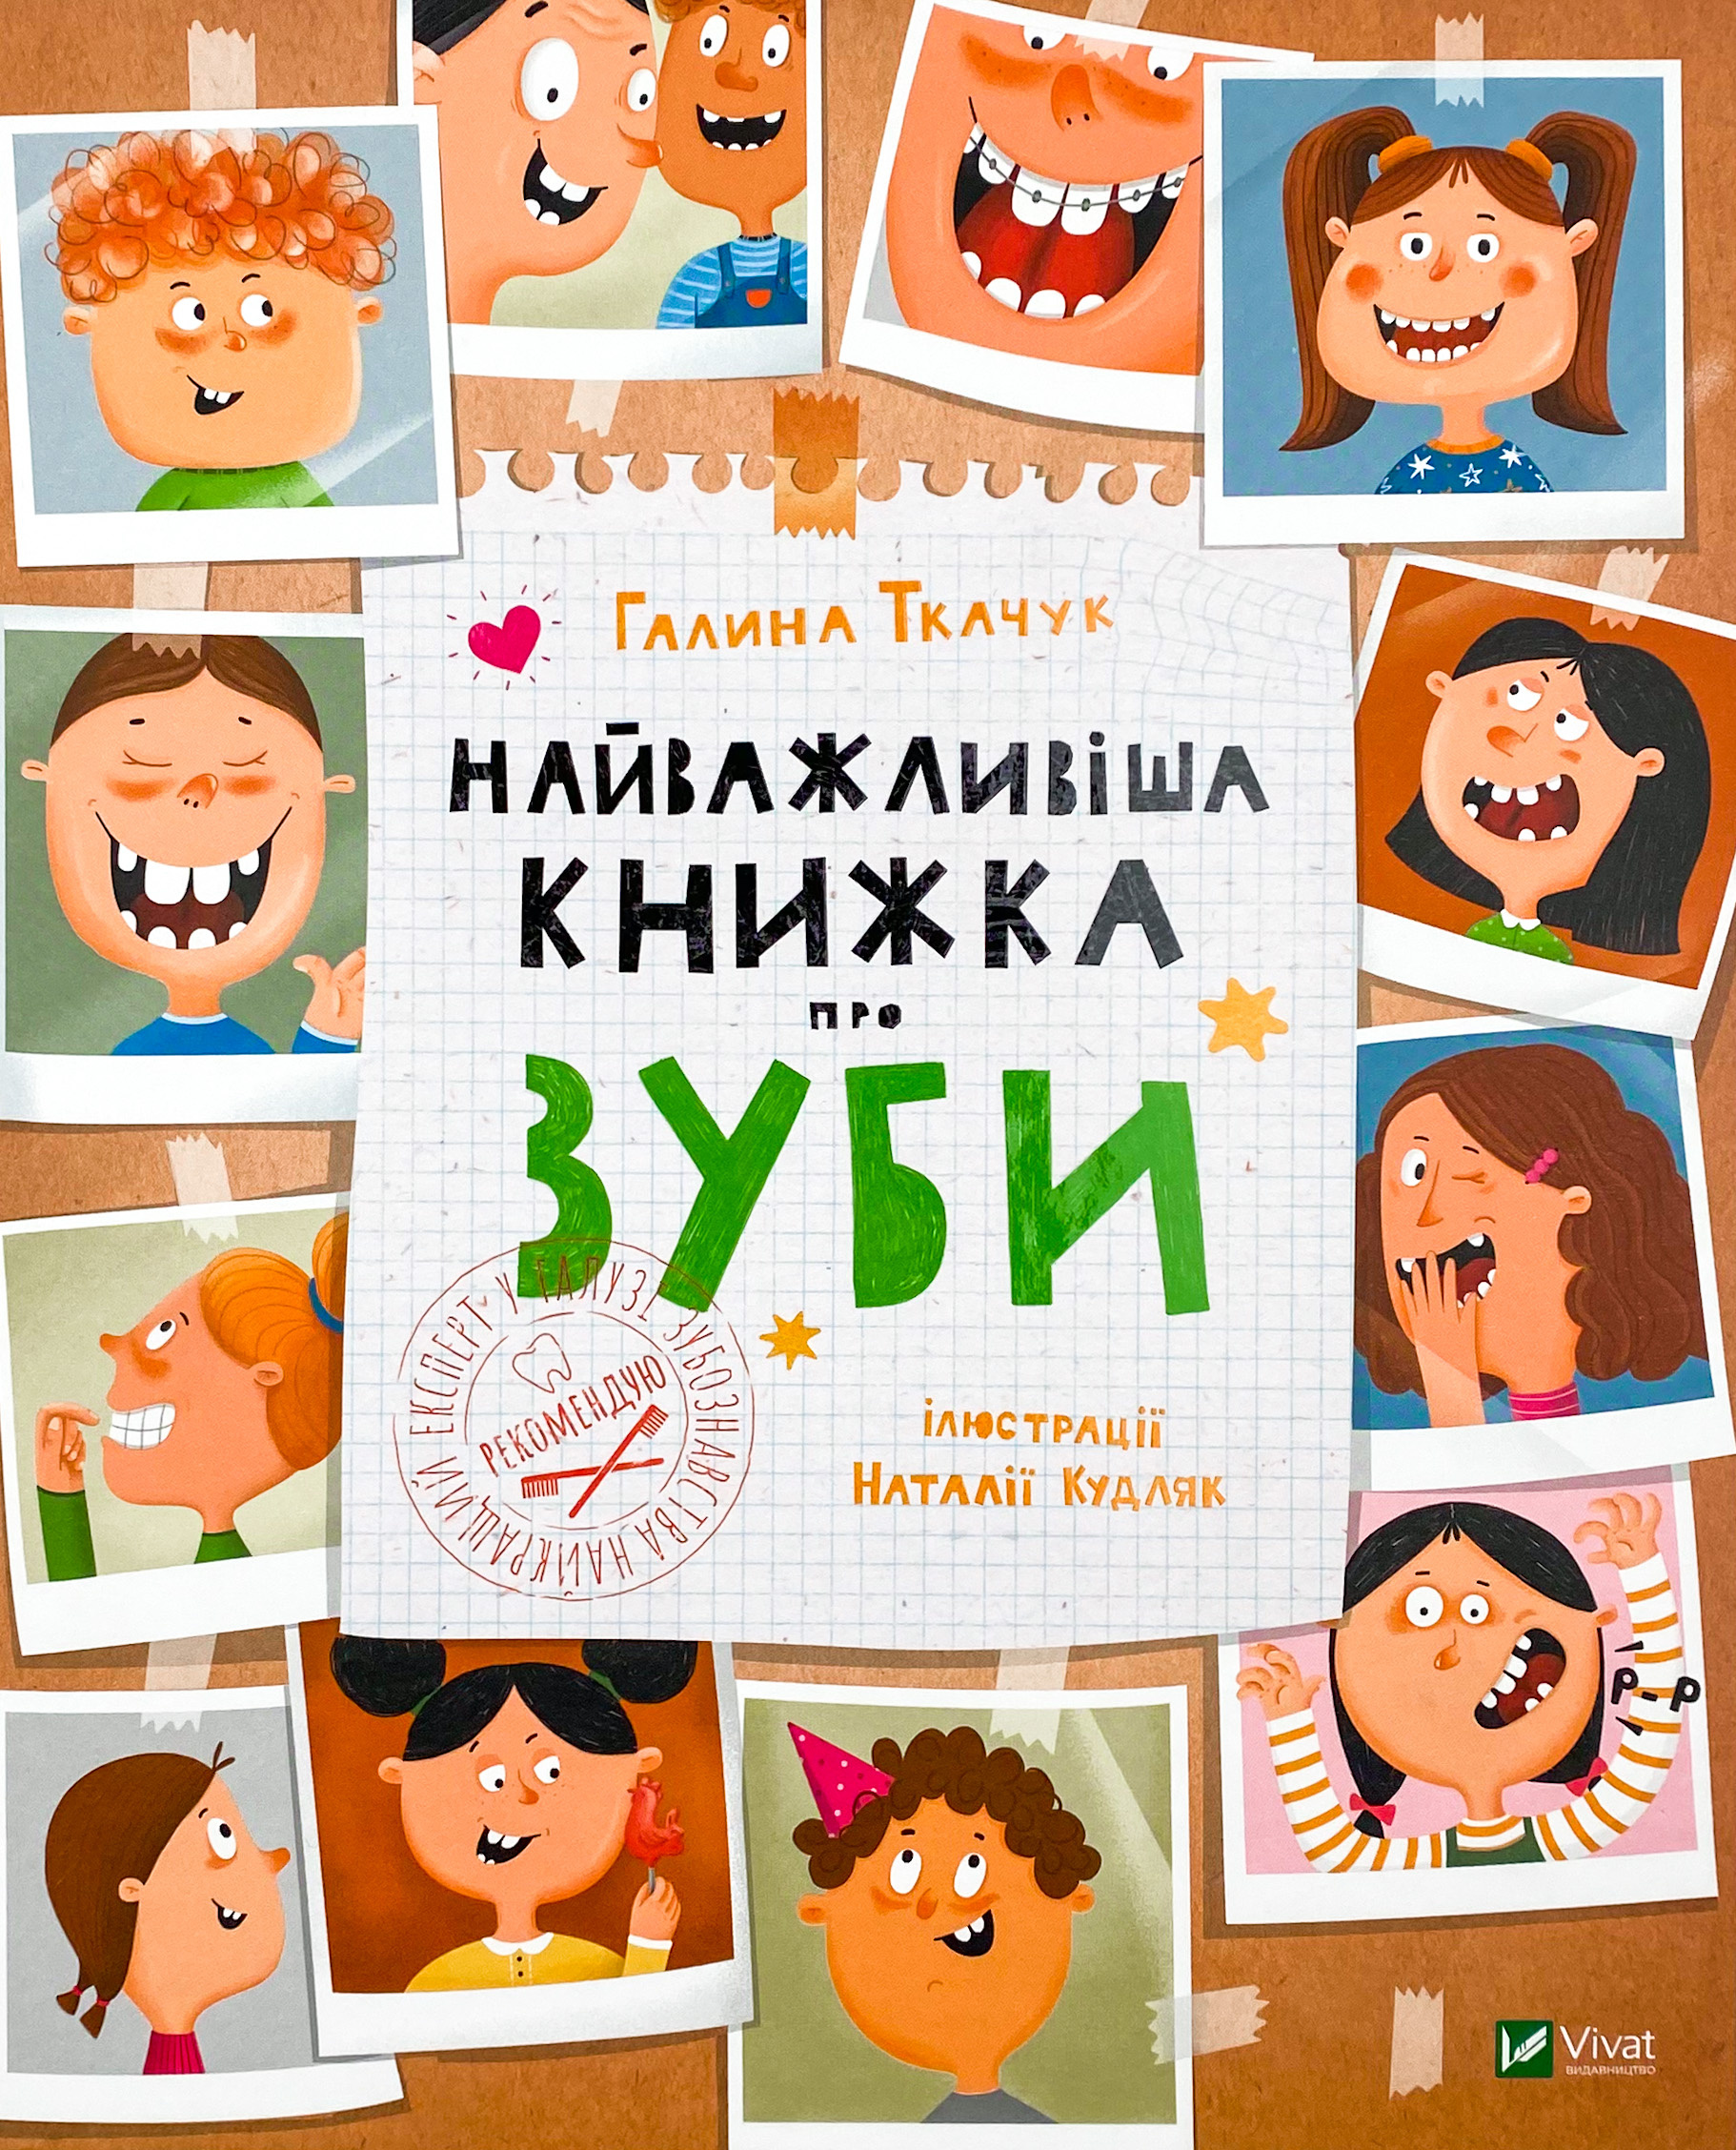 Найважливіша книжка про зуби. Автор — Галина Ткачук. 